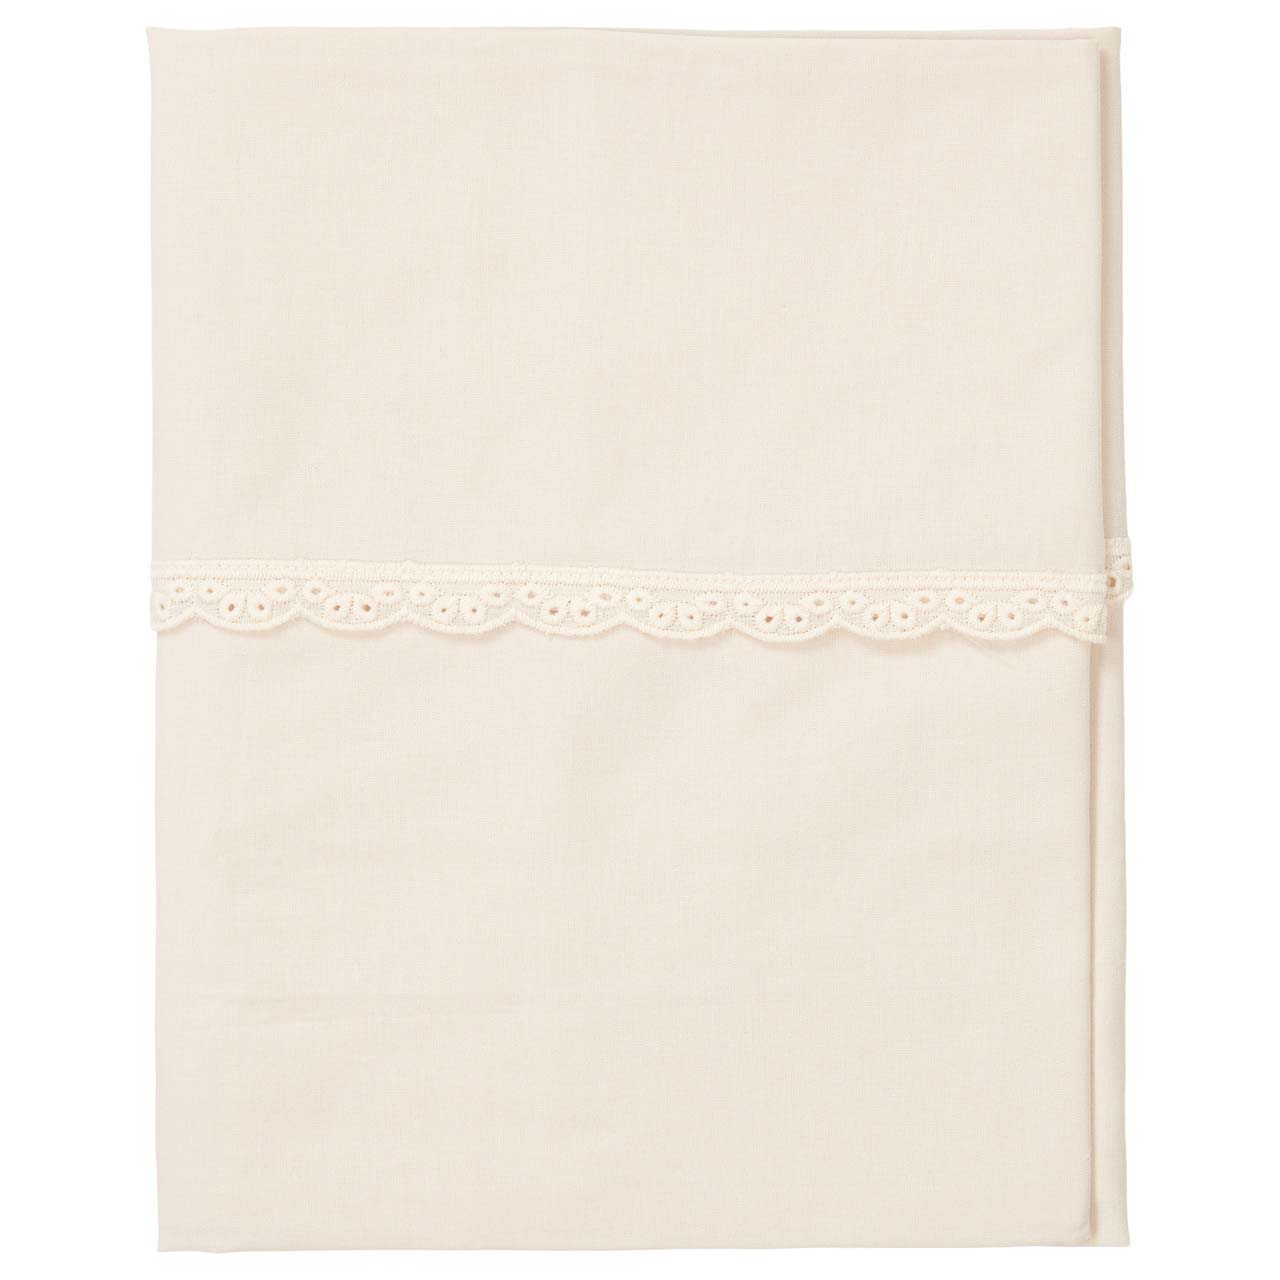 Cot sheet Breeze warm white